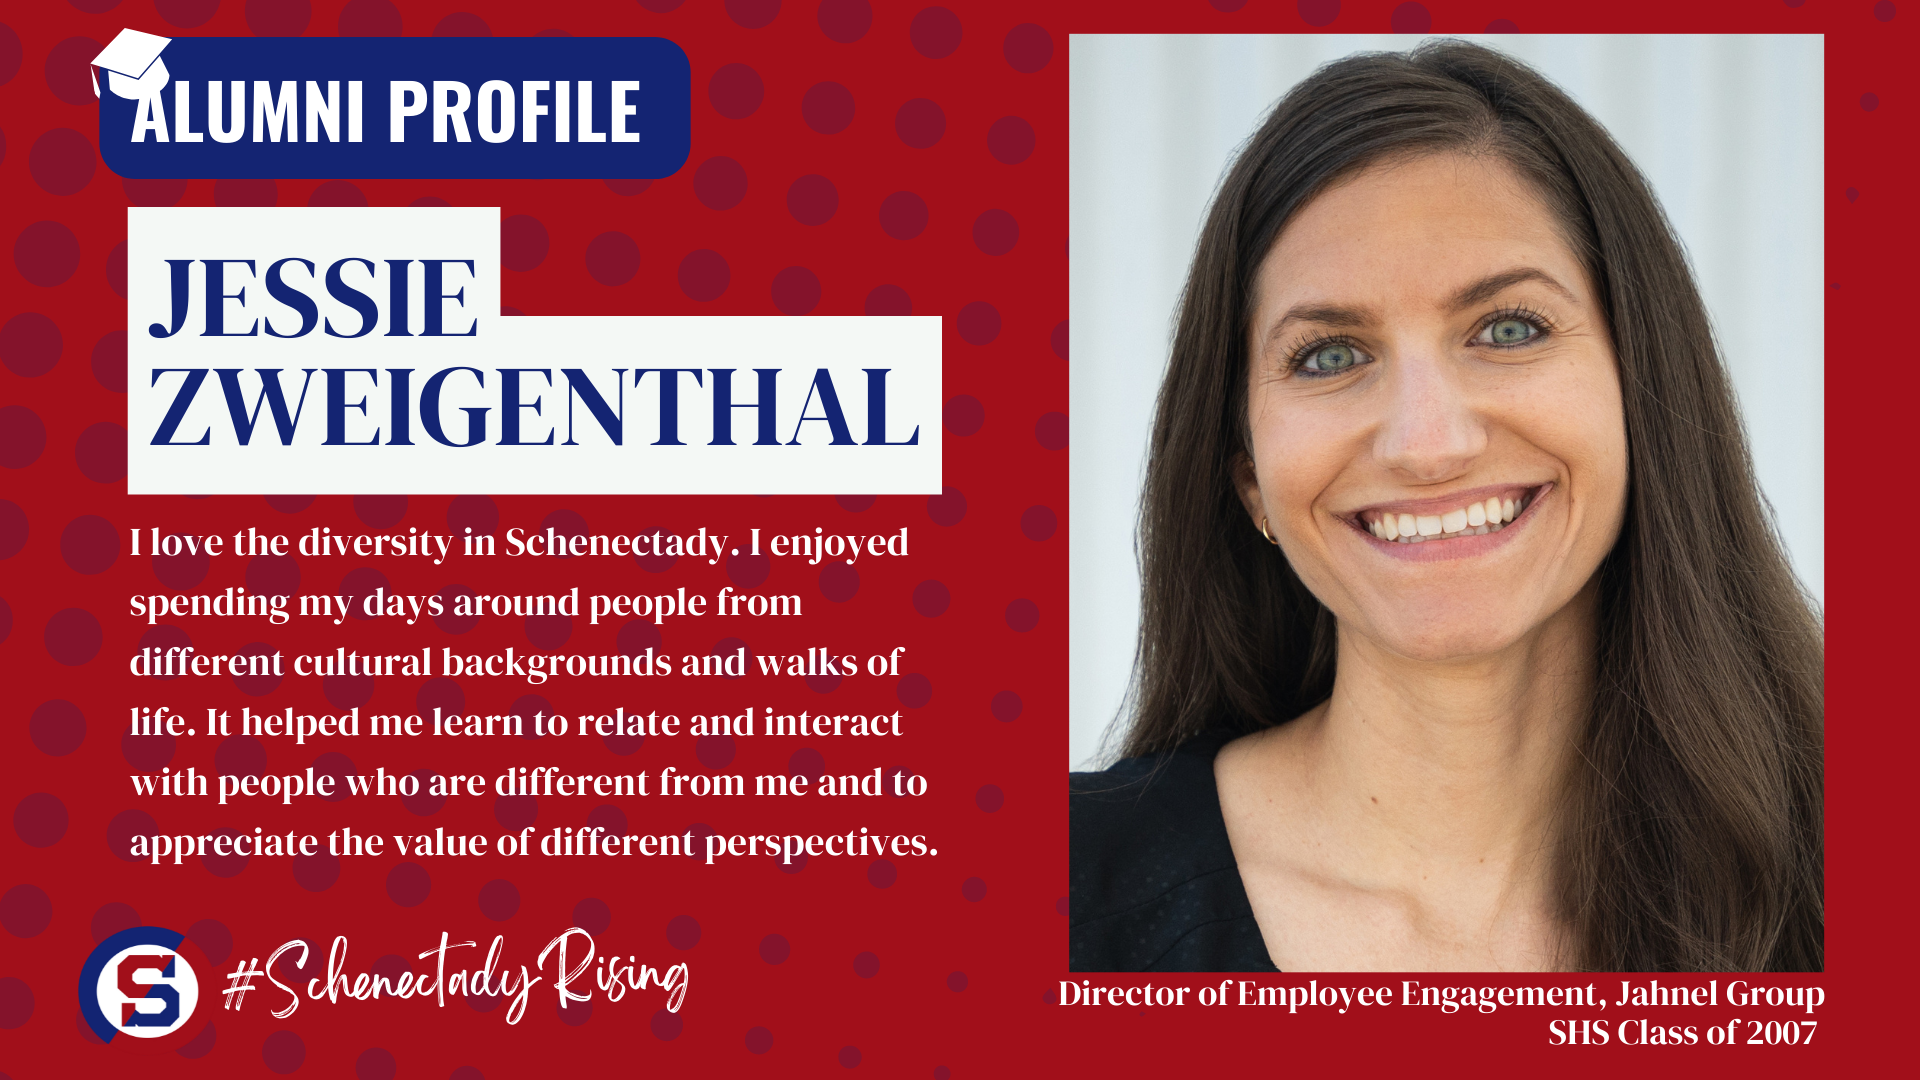 Alumni Profile:  Jessie Zweigenthal